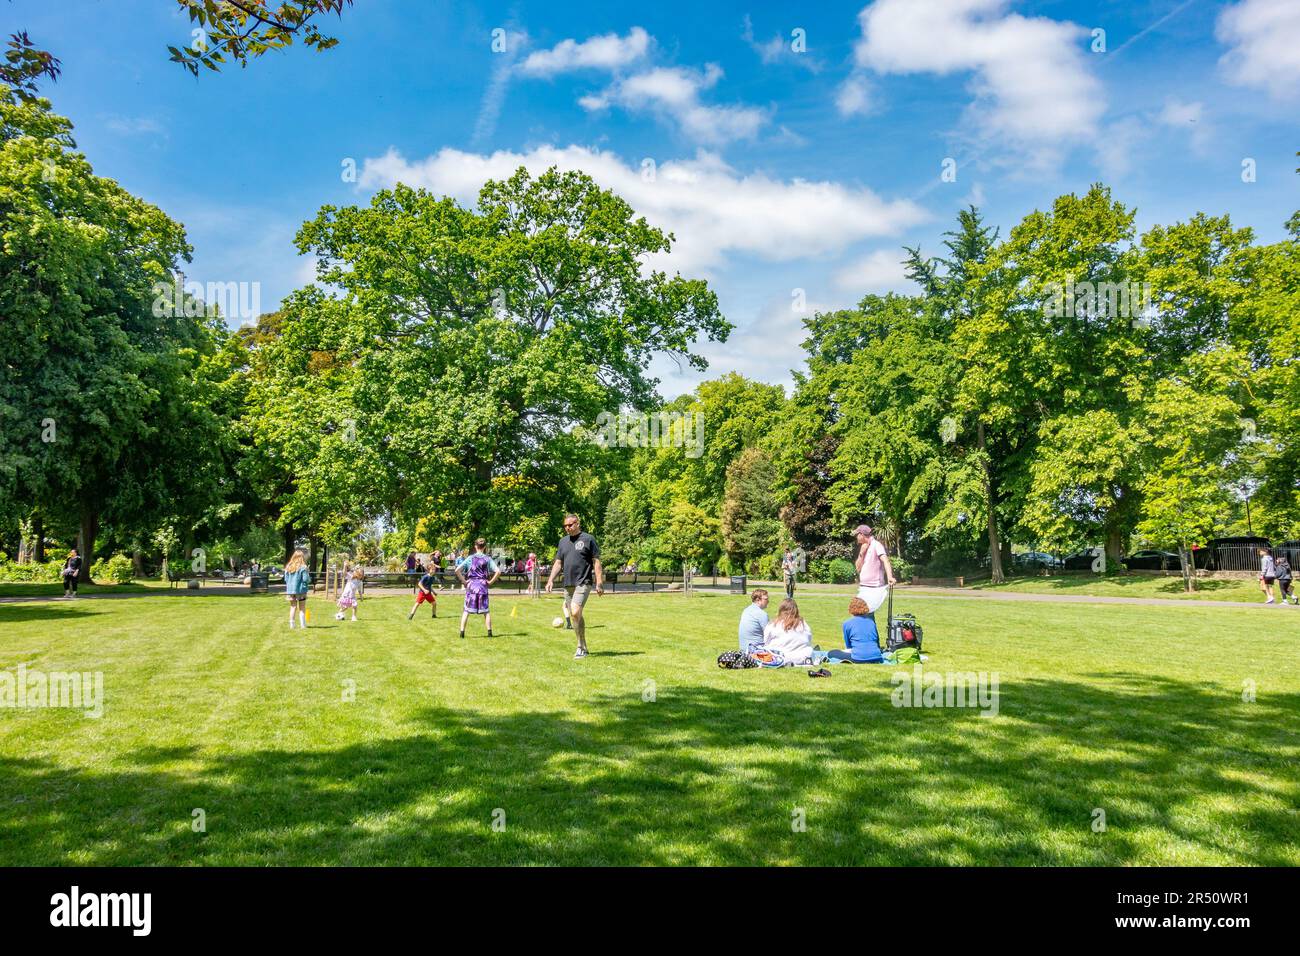 Una vista de la gente disfrutando de Alexandra Gardens, un parque público en Windsor, Berkshire, Reino Unido con árboles verdes, hierba y cielo azul Foto de stock